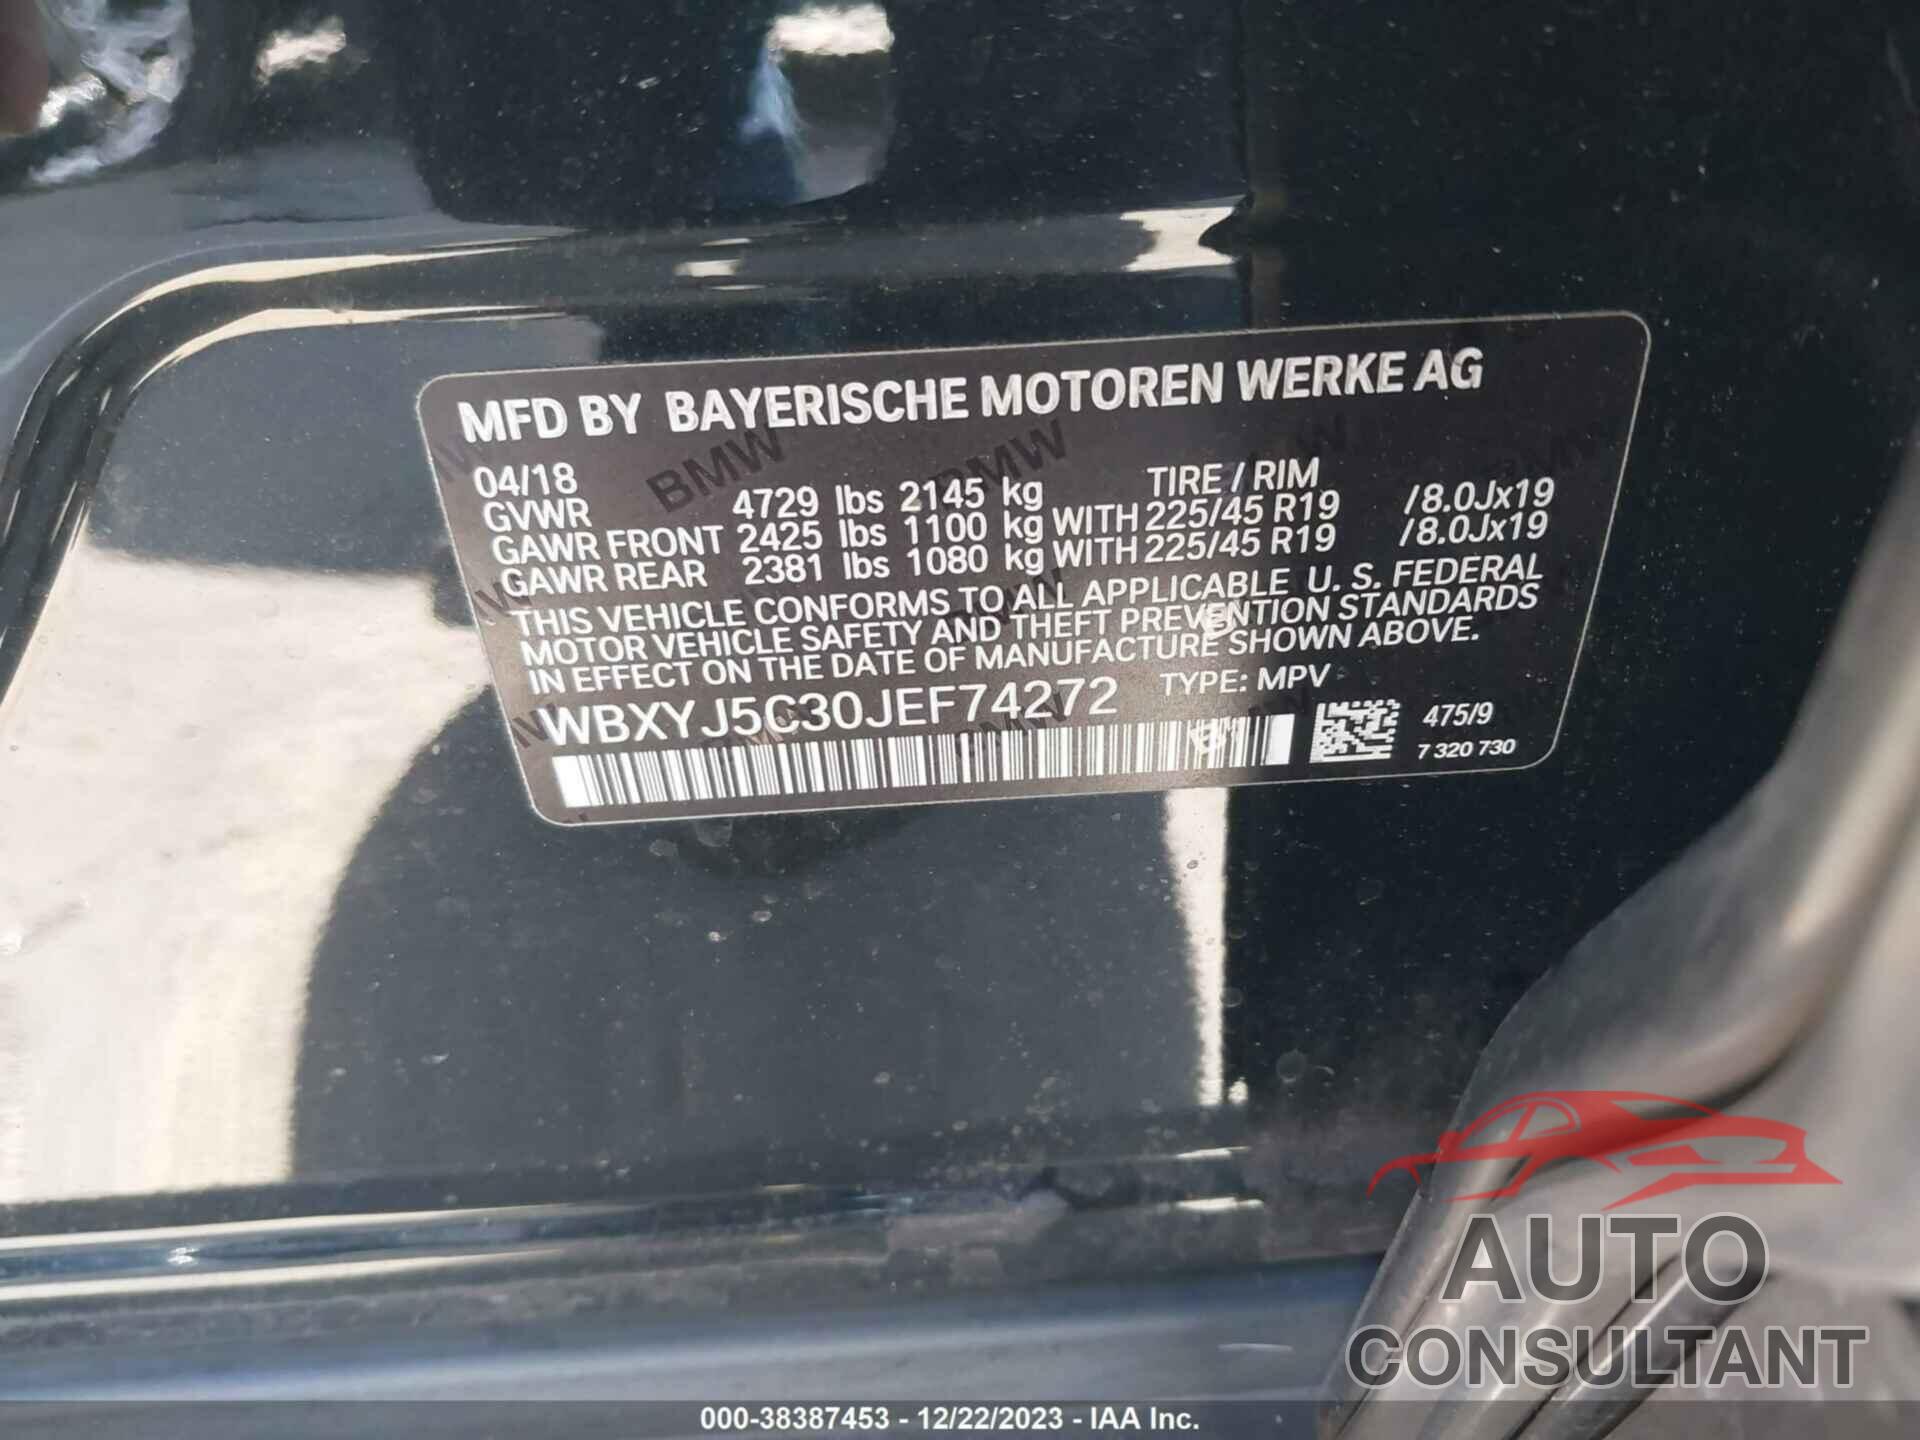 BMW X2 2018 - WBXYJ5C30JEF74272